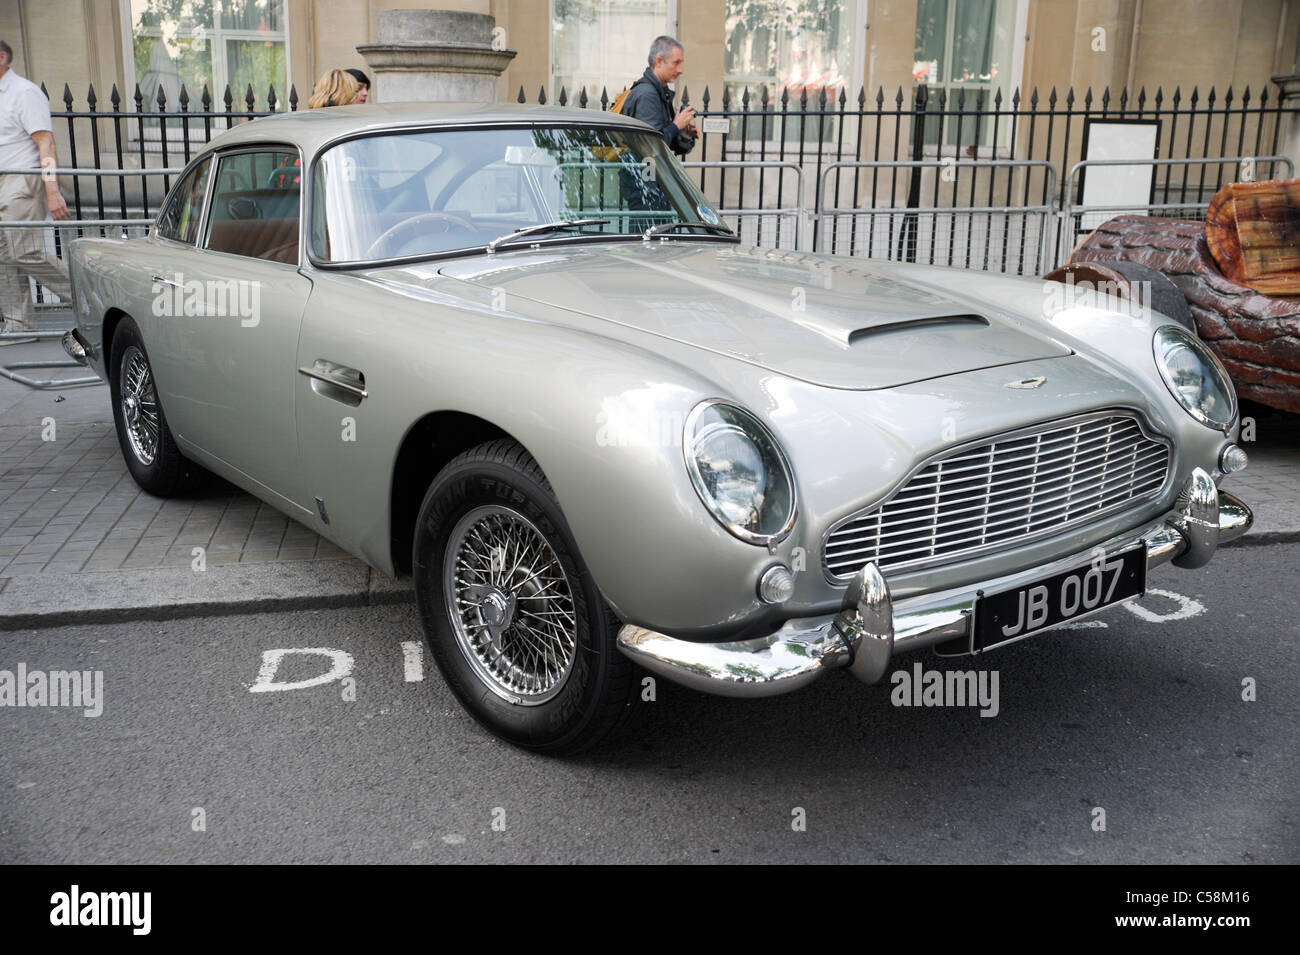 Londres, Royaume-Uni, James Bond 007 Aston Martin voiture à Trafalgar Square. Banque D'Images